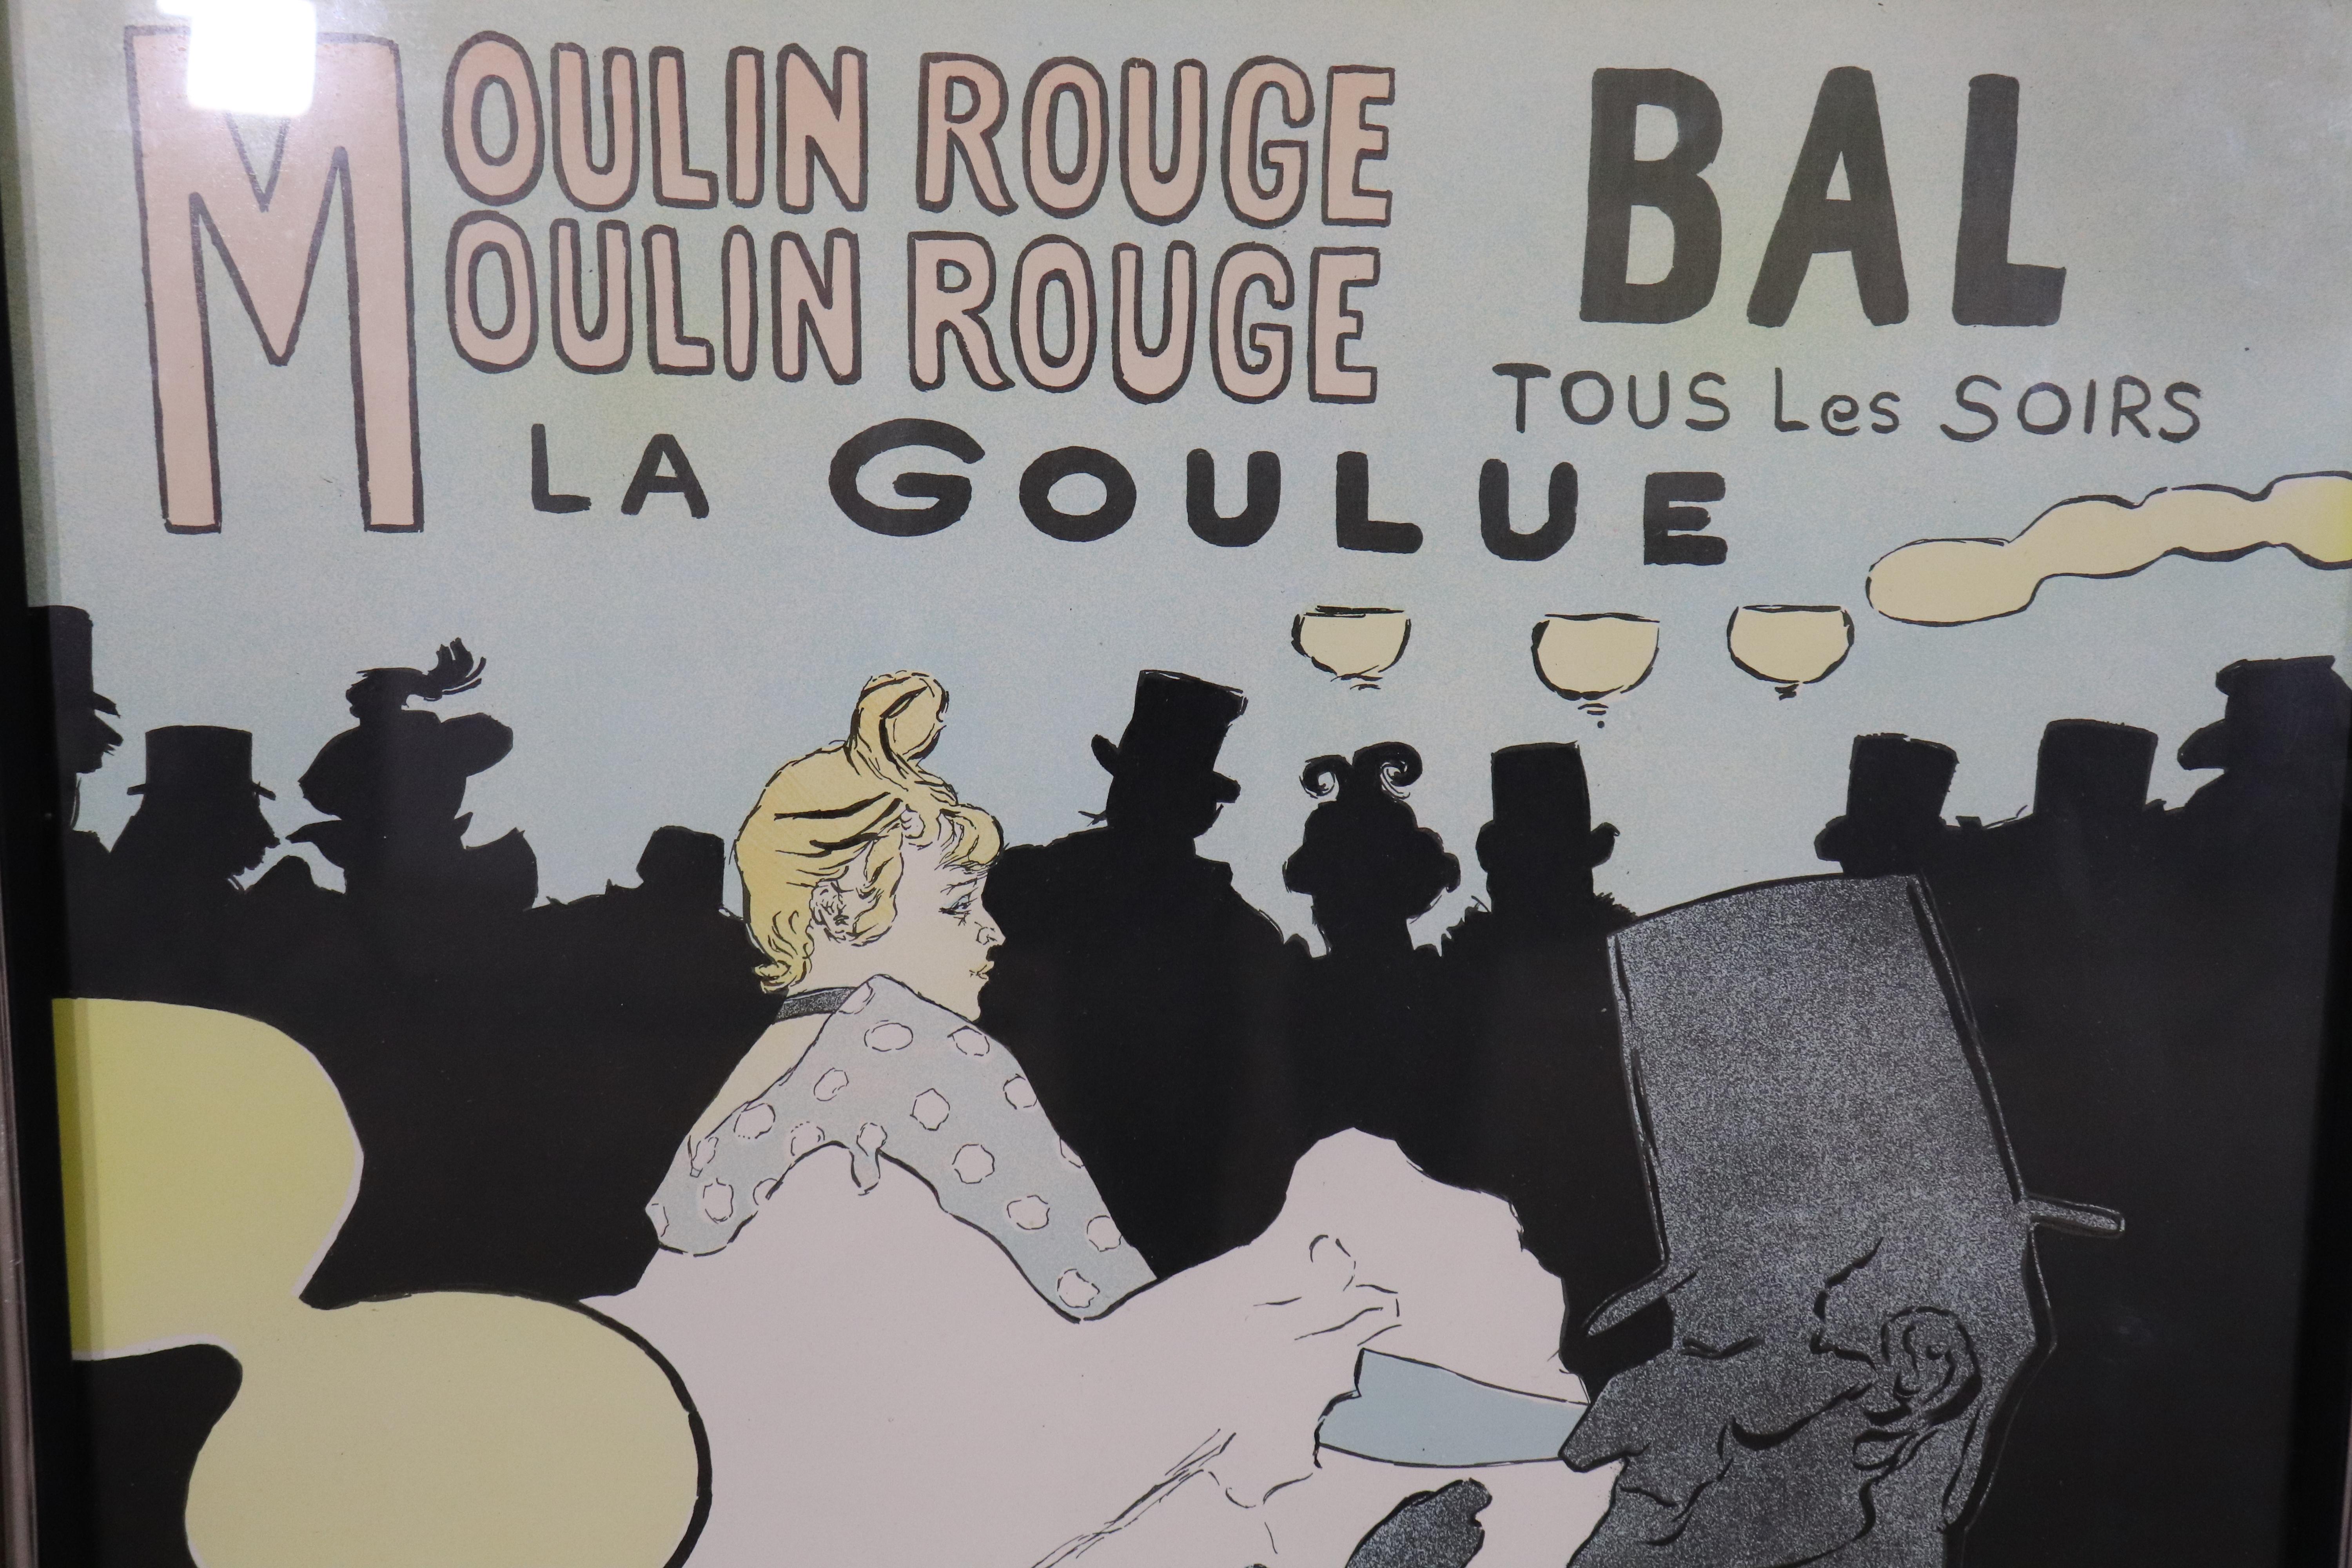 Belle réédition de la célèbre affiche parisienne d'Henri de Toulouse-Lautrec, publiée par l'Imprimerie Chaix. Les danseuses emblématiques du Moulin Rouge sont à l'honneur.
Veuillez confirmer le lieu NY ou NJ